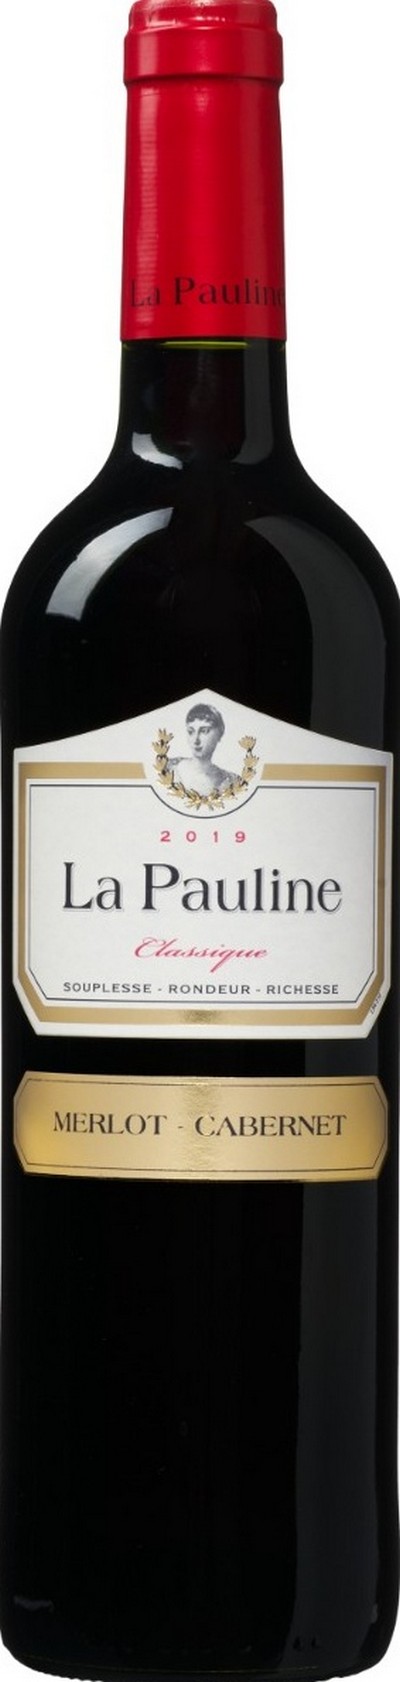 la-pauline-classique-merlot-cabernet-pays-doc-igp-2019